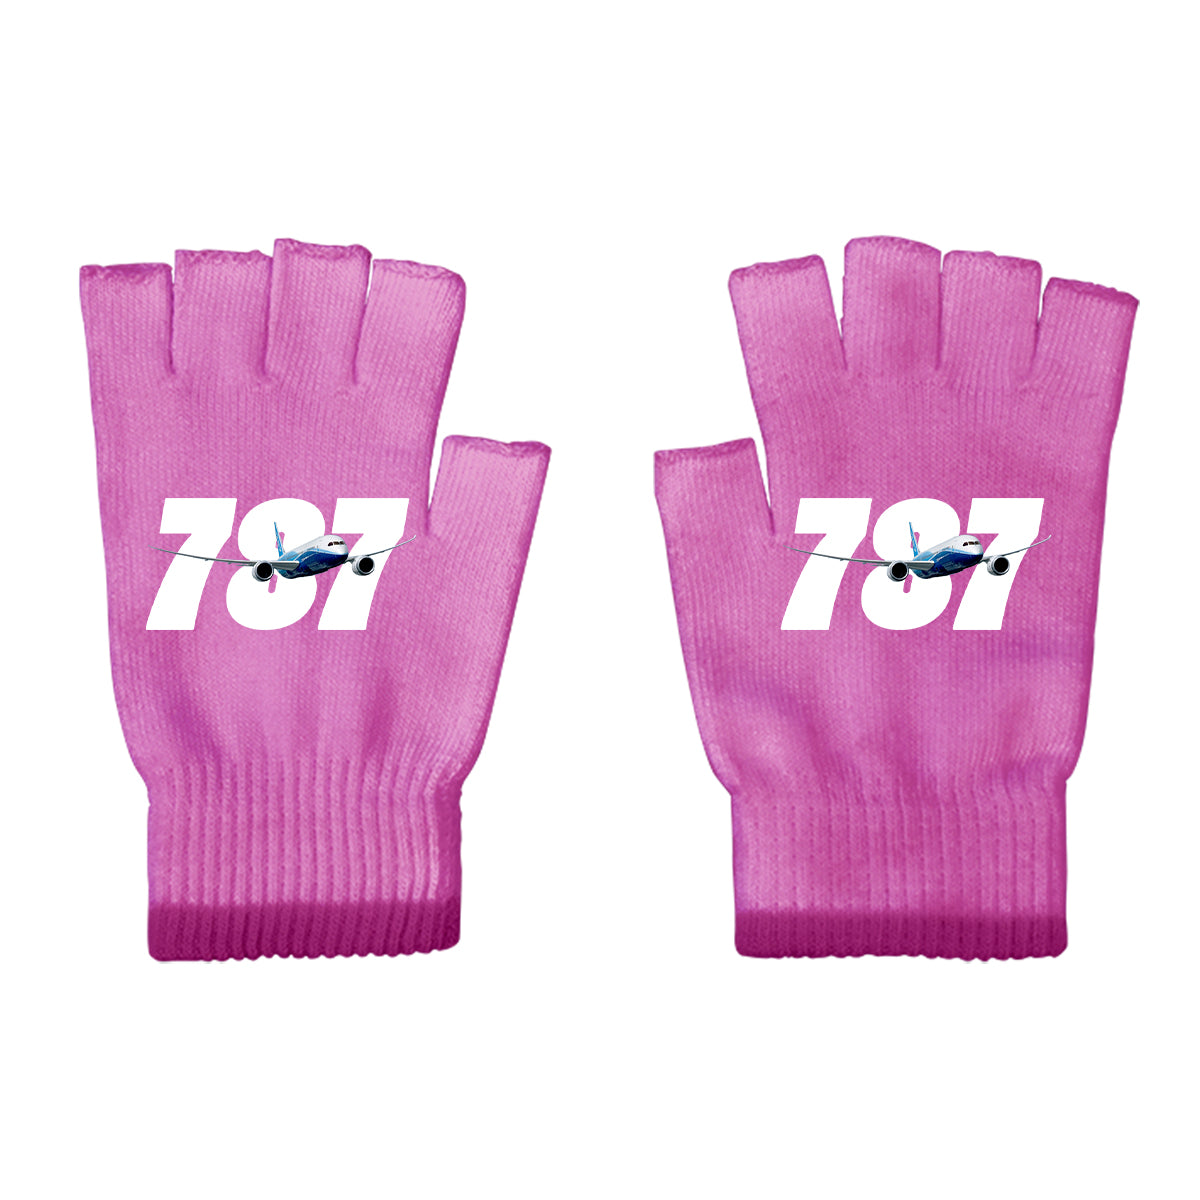 Super Boeing 787 Designed Cut Gloves